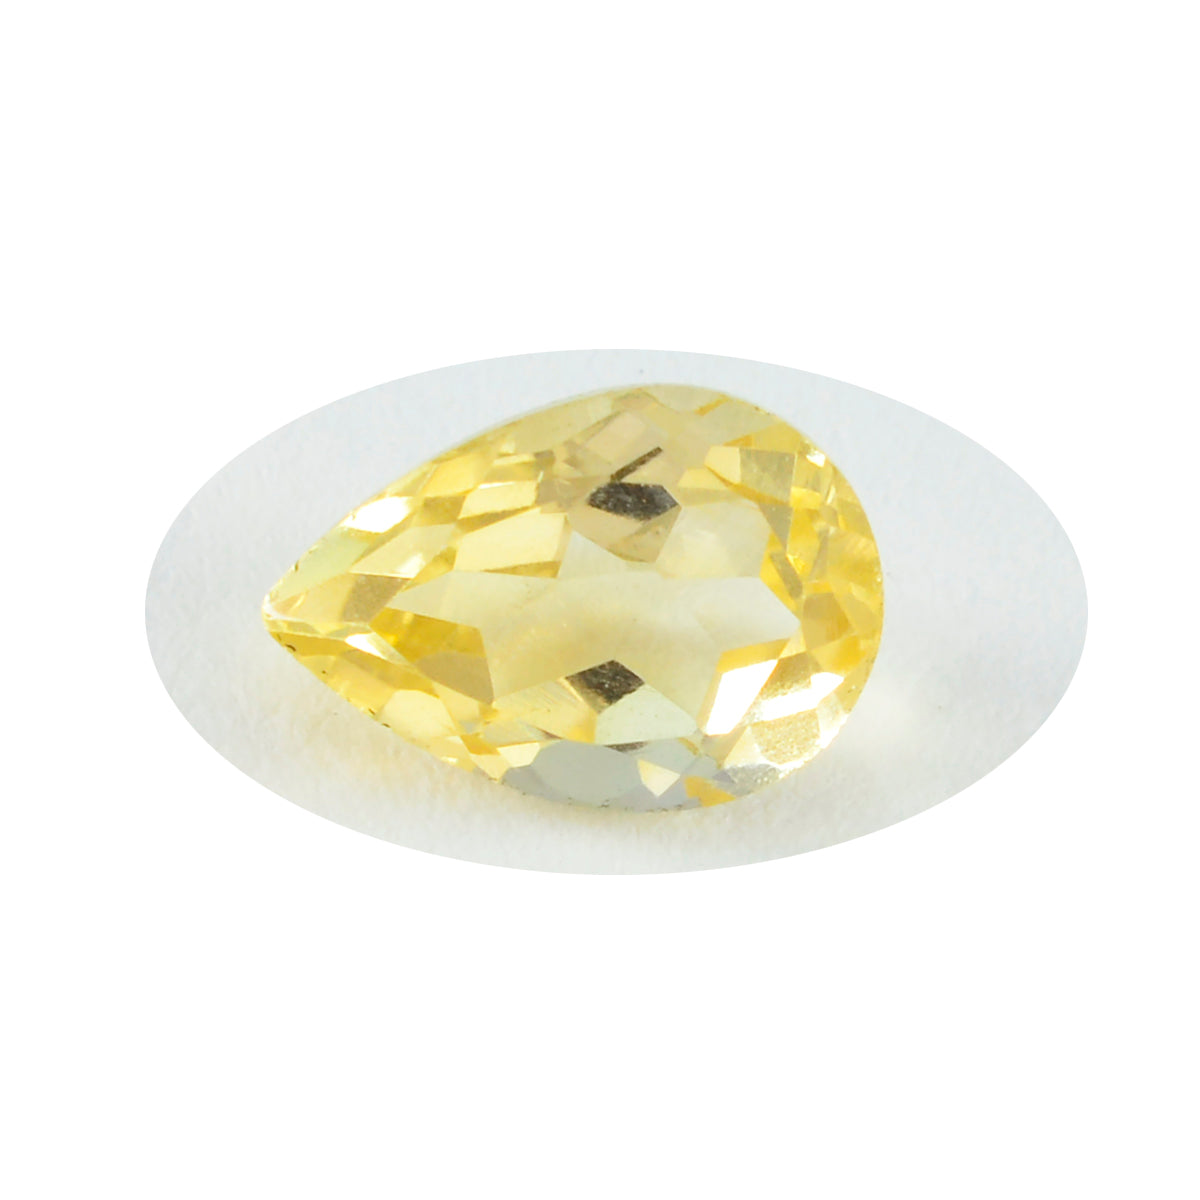 riyogems 1шт натуральный желтый цитрин ограненный 7x10 мм драгоценные камни грушевидной формы фантастического качества